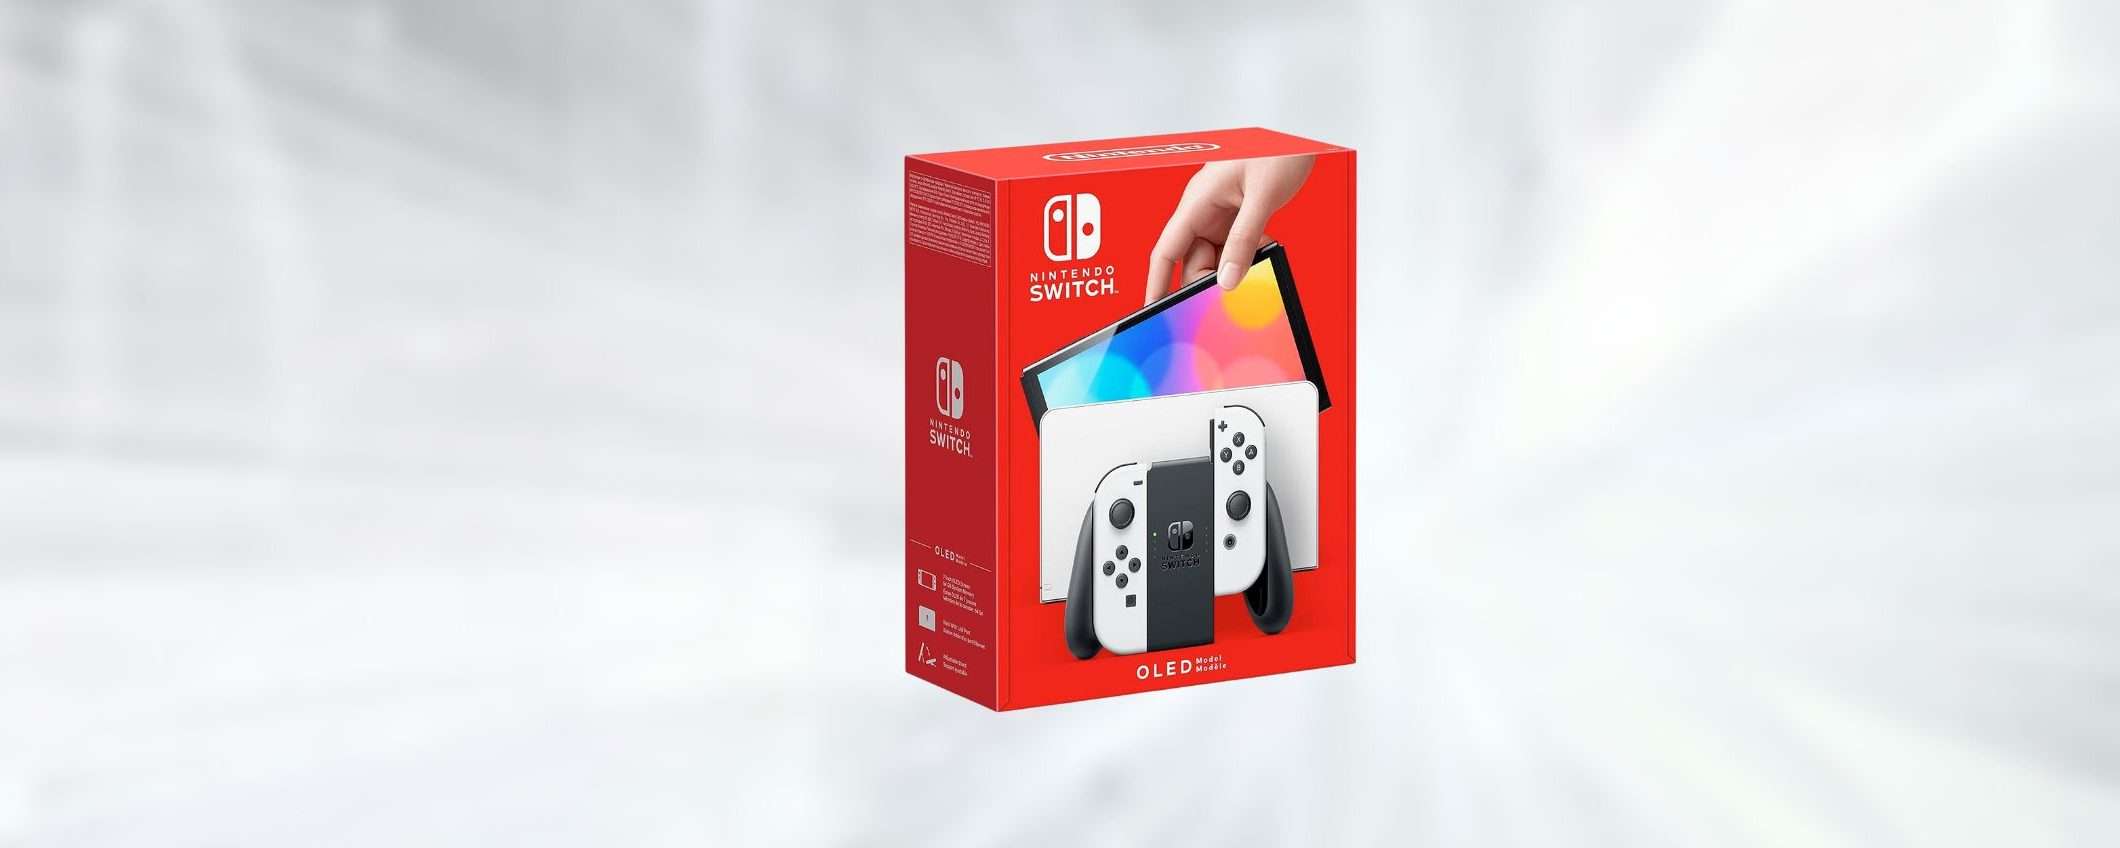 Nintendo Switch OLED a prezzo shock con il NUOVO COUPON eBay